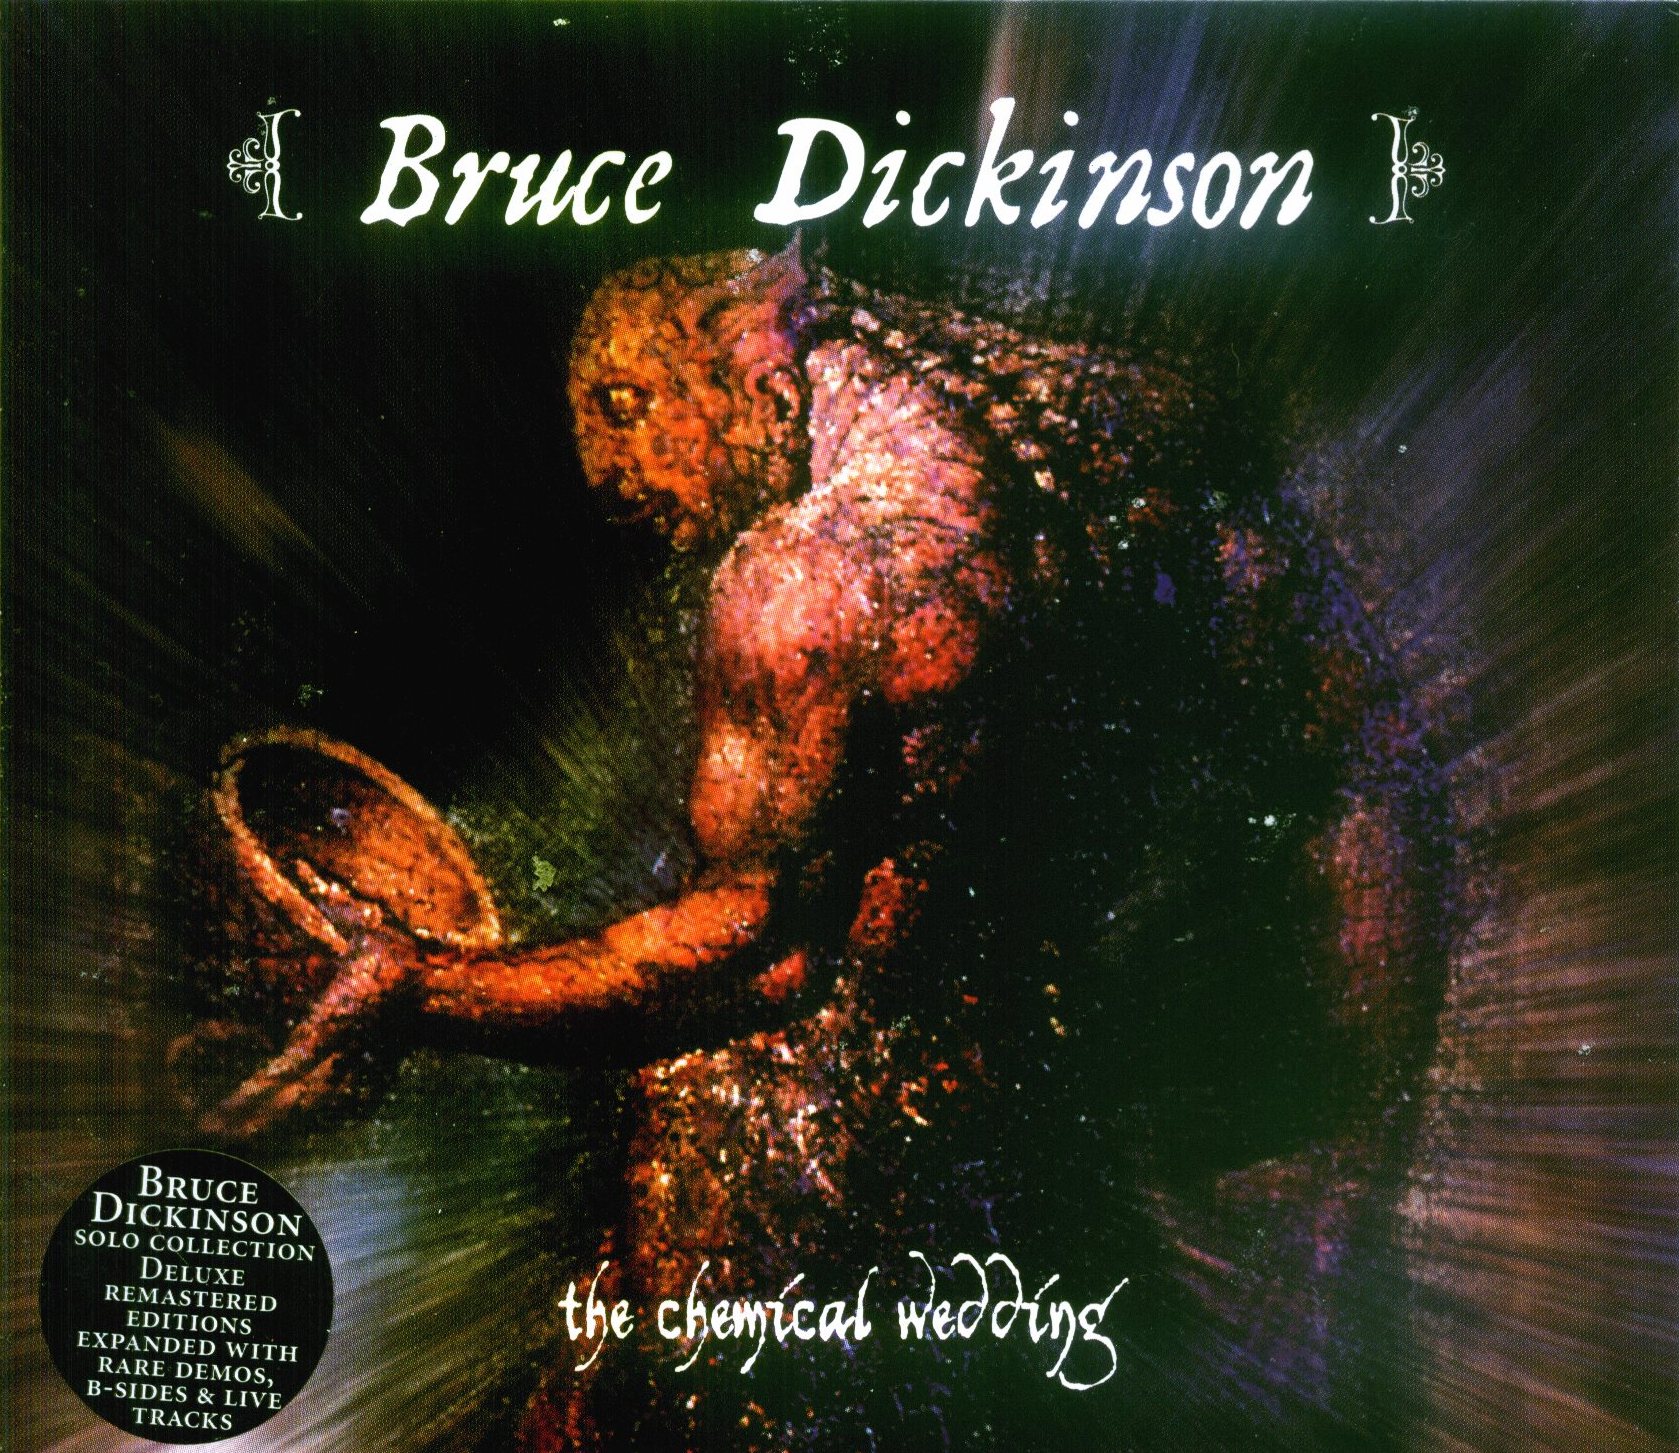 Брюс дикинсон новый альбом. The Chemical Wedding Брюс Дикинсон. Dickinson 1998]. Bruce Dickinson 1998. Bruce Dickinson the Chemical Wedding.